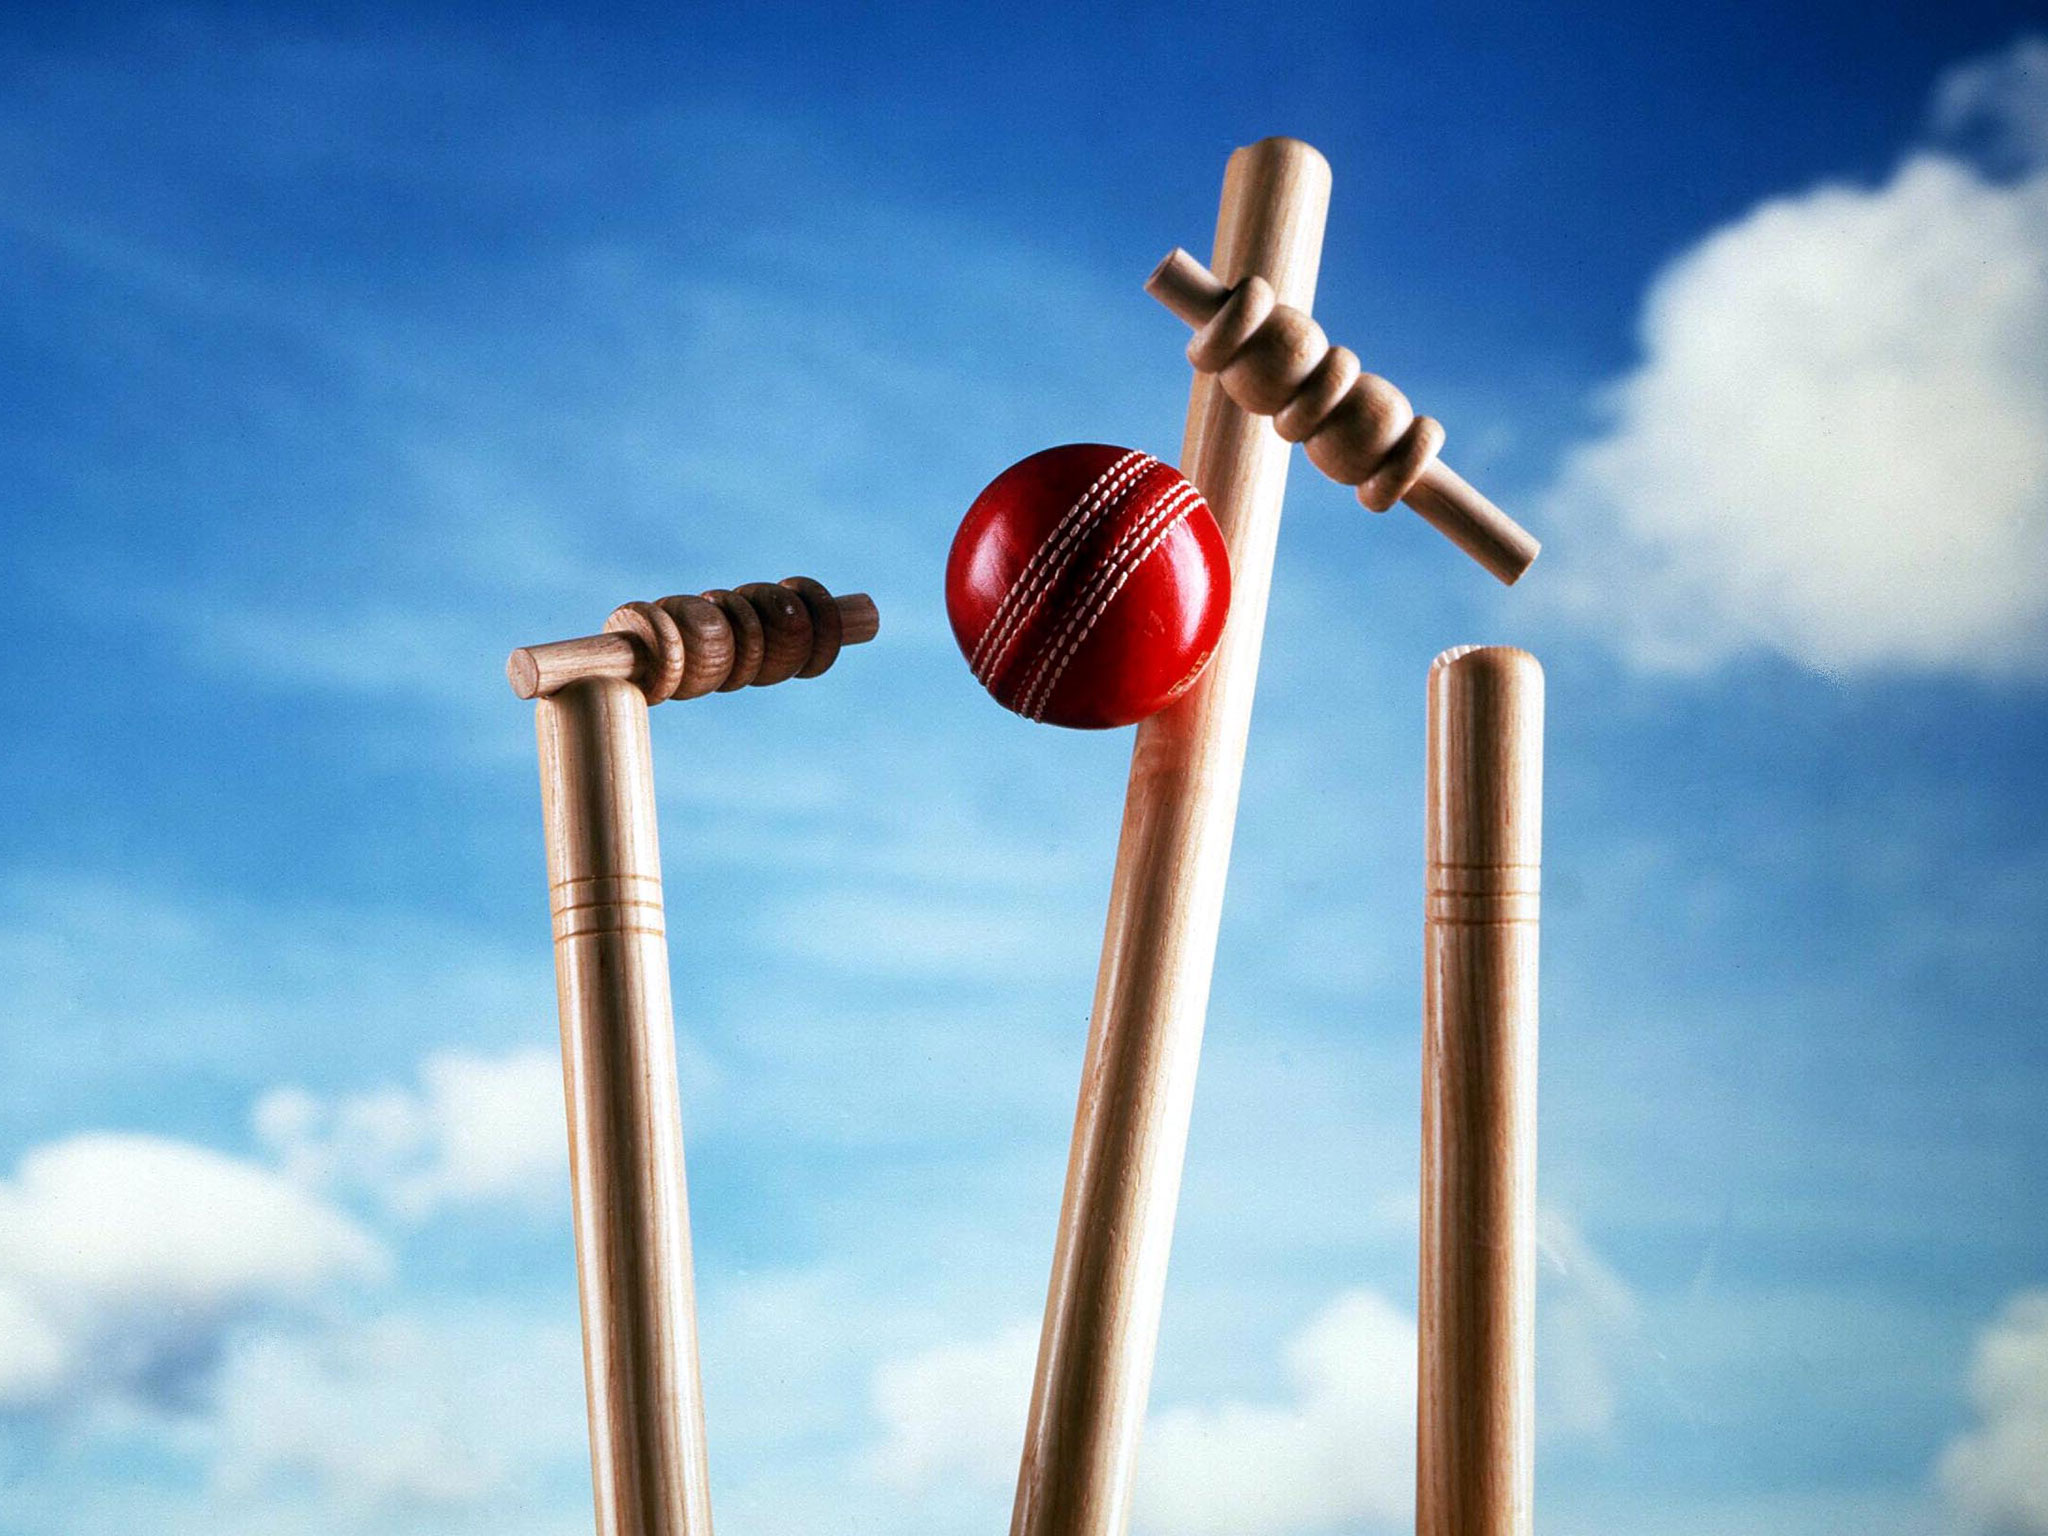 cricket.jpg